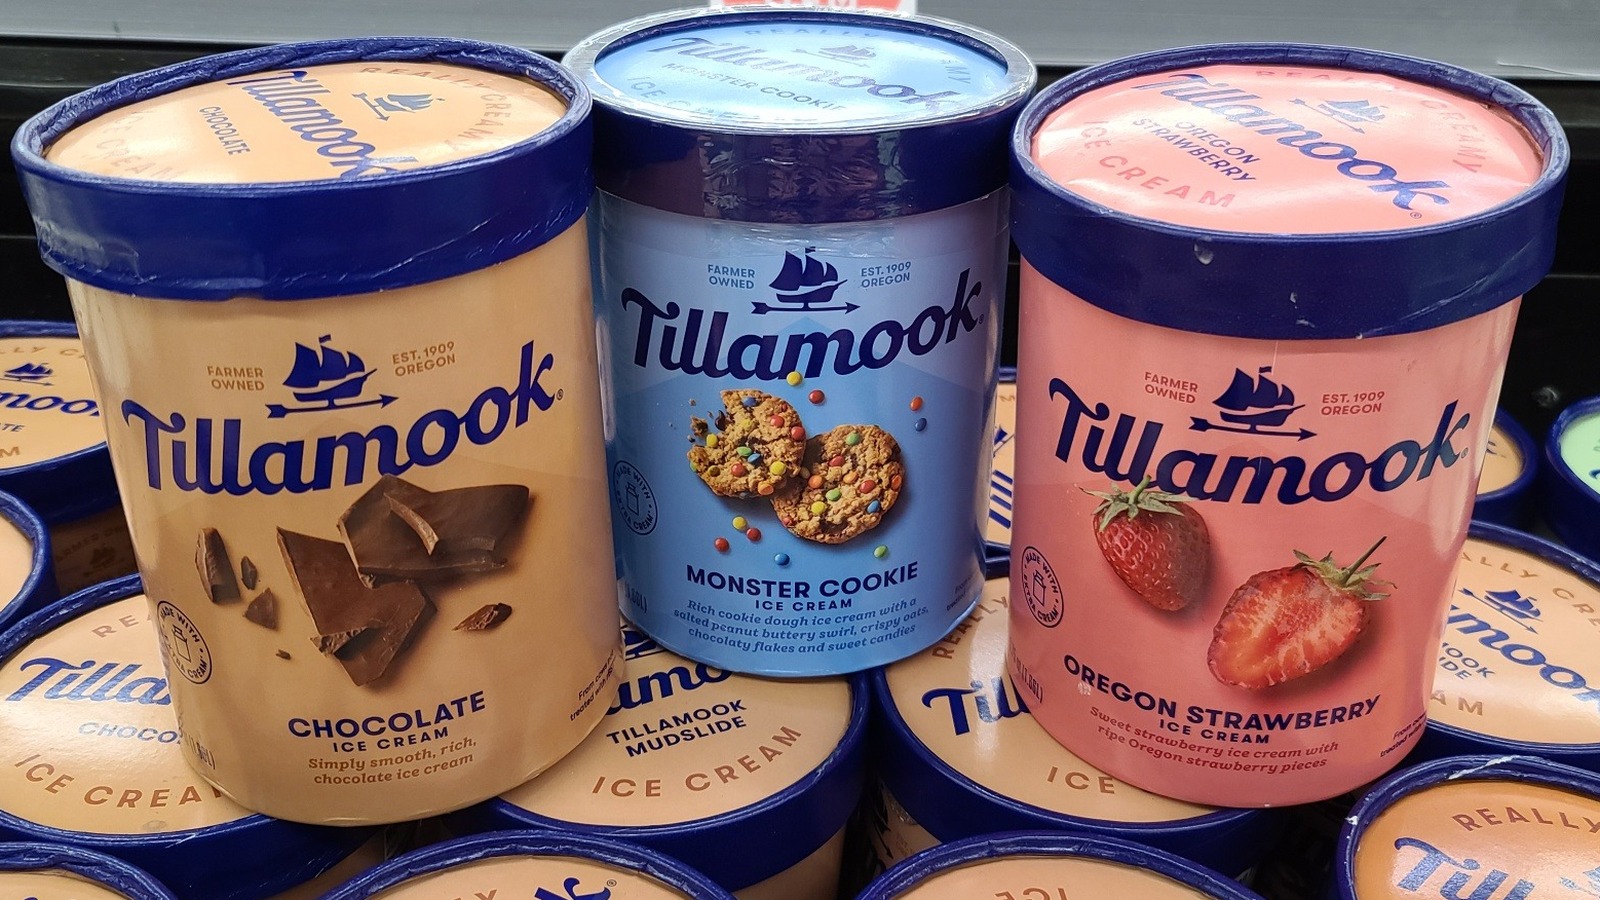 Ice Cream: Tillamook Ice Cream and Frozen Dessert - Tillamook